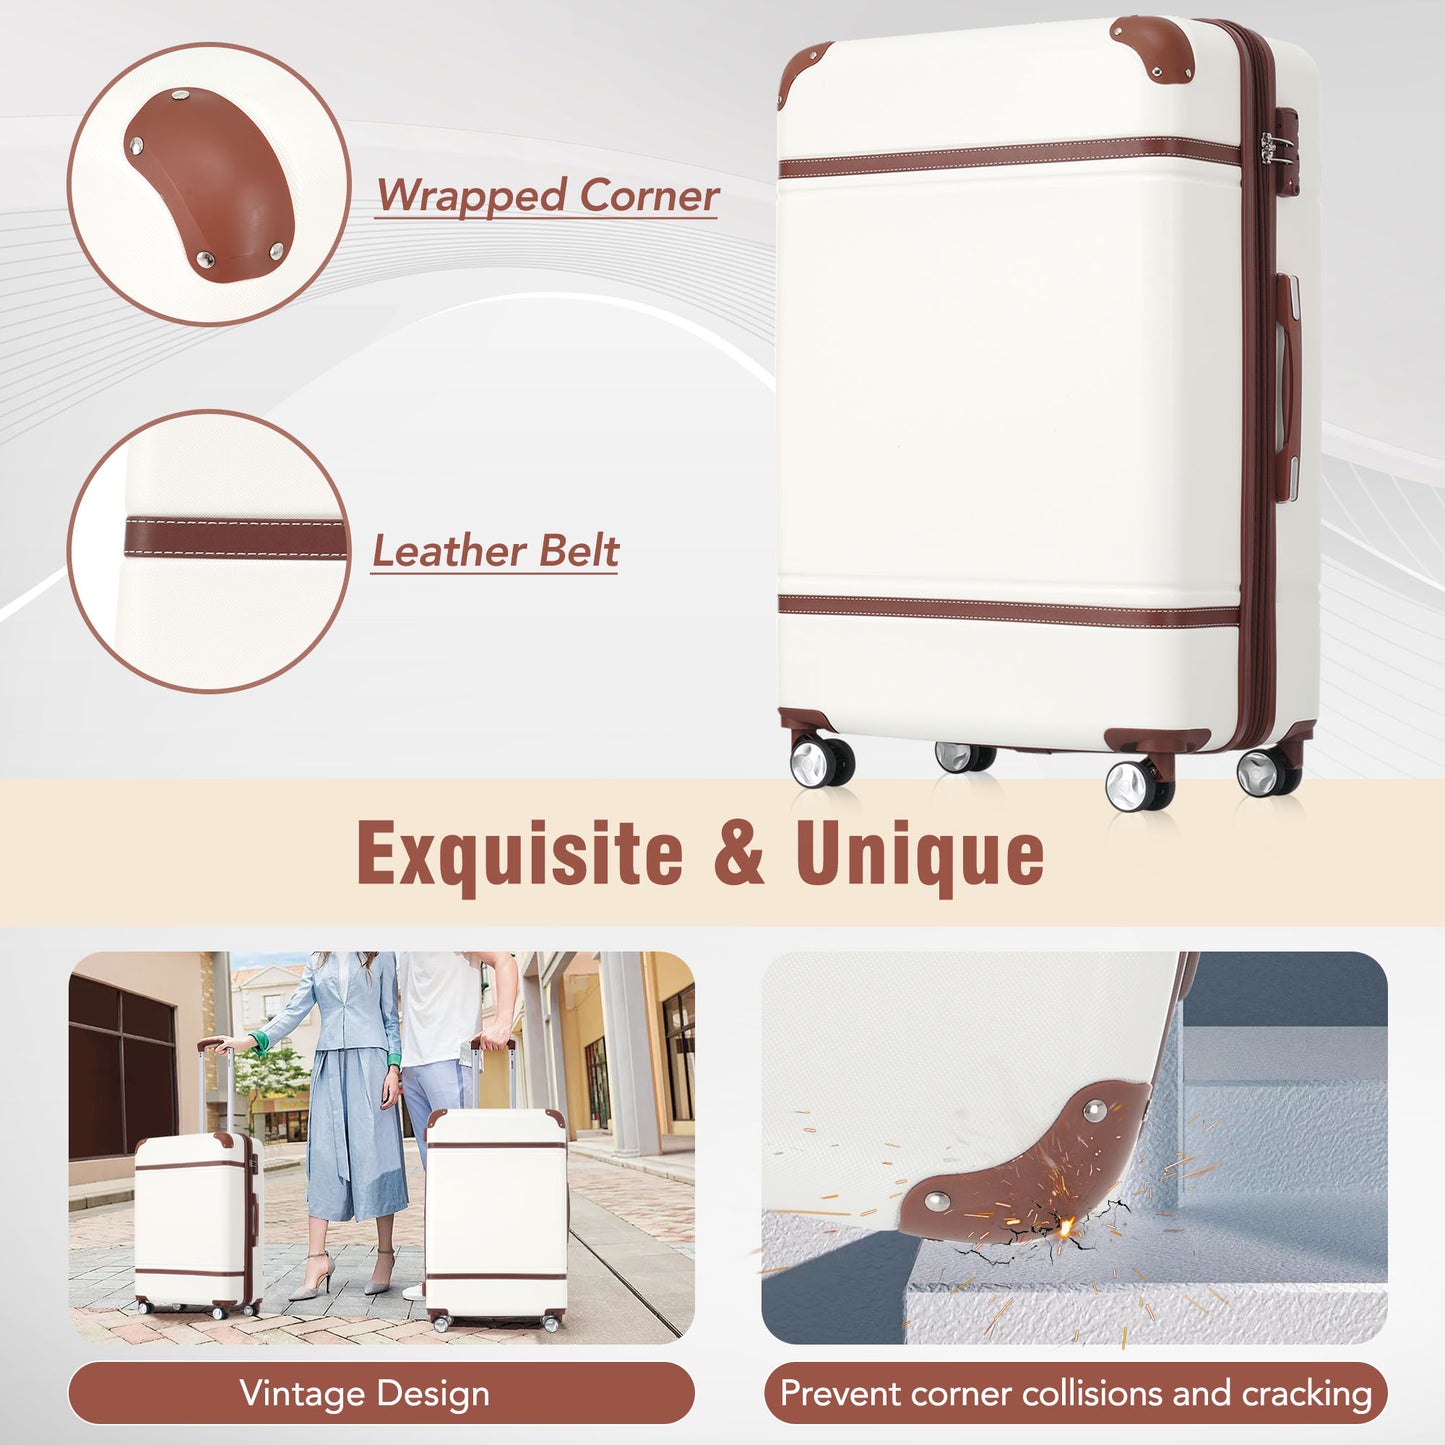 Bagage vintage blanc 24" 1 pièce avec serrure TSA, valise à roulettes légère et extensible